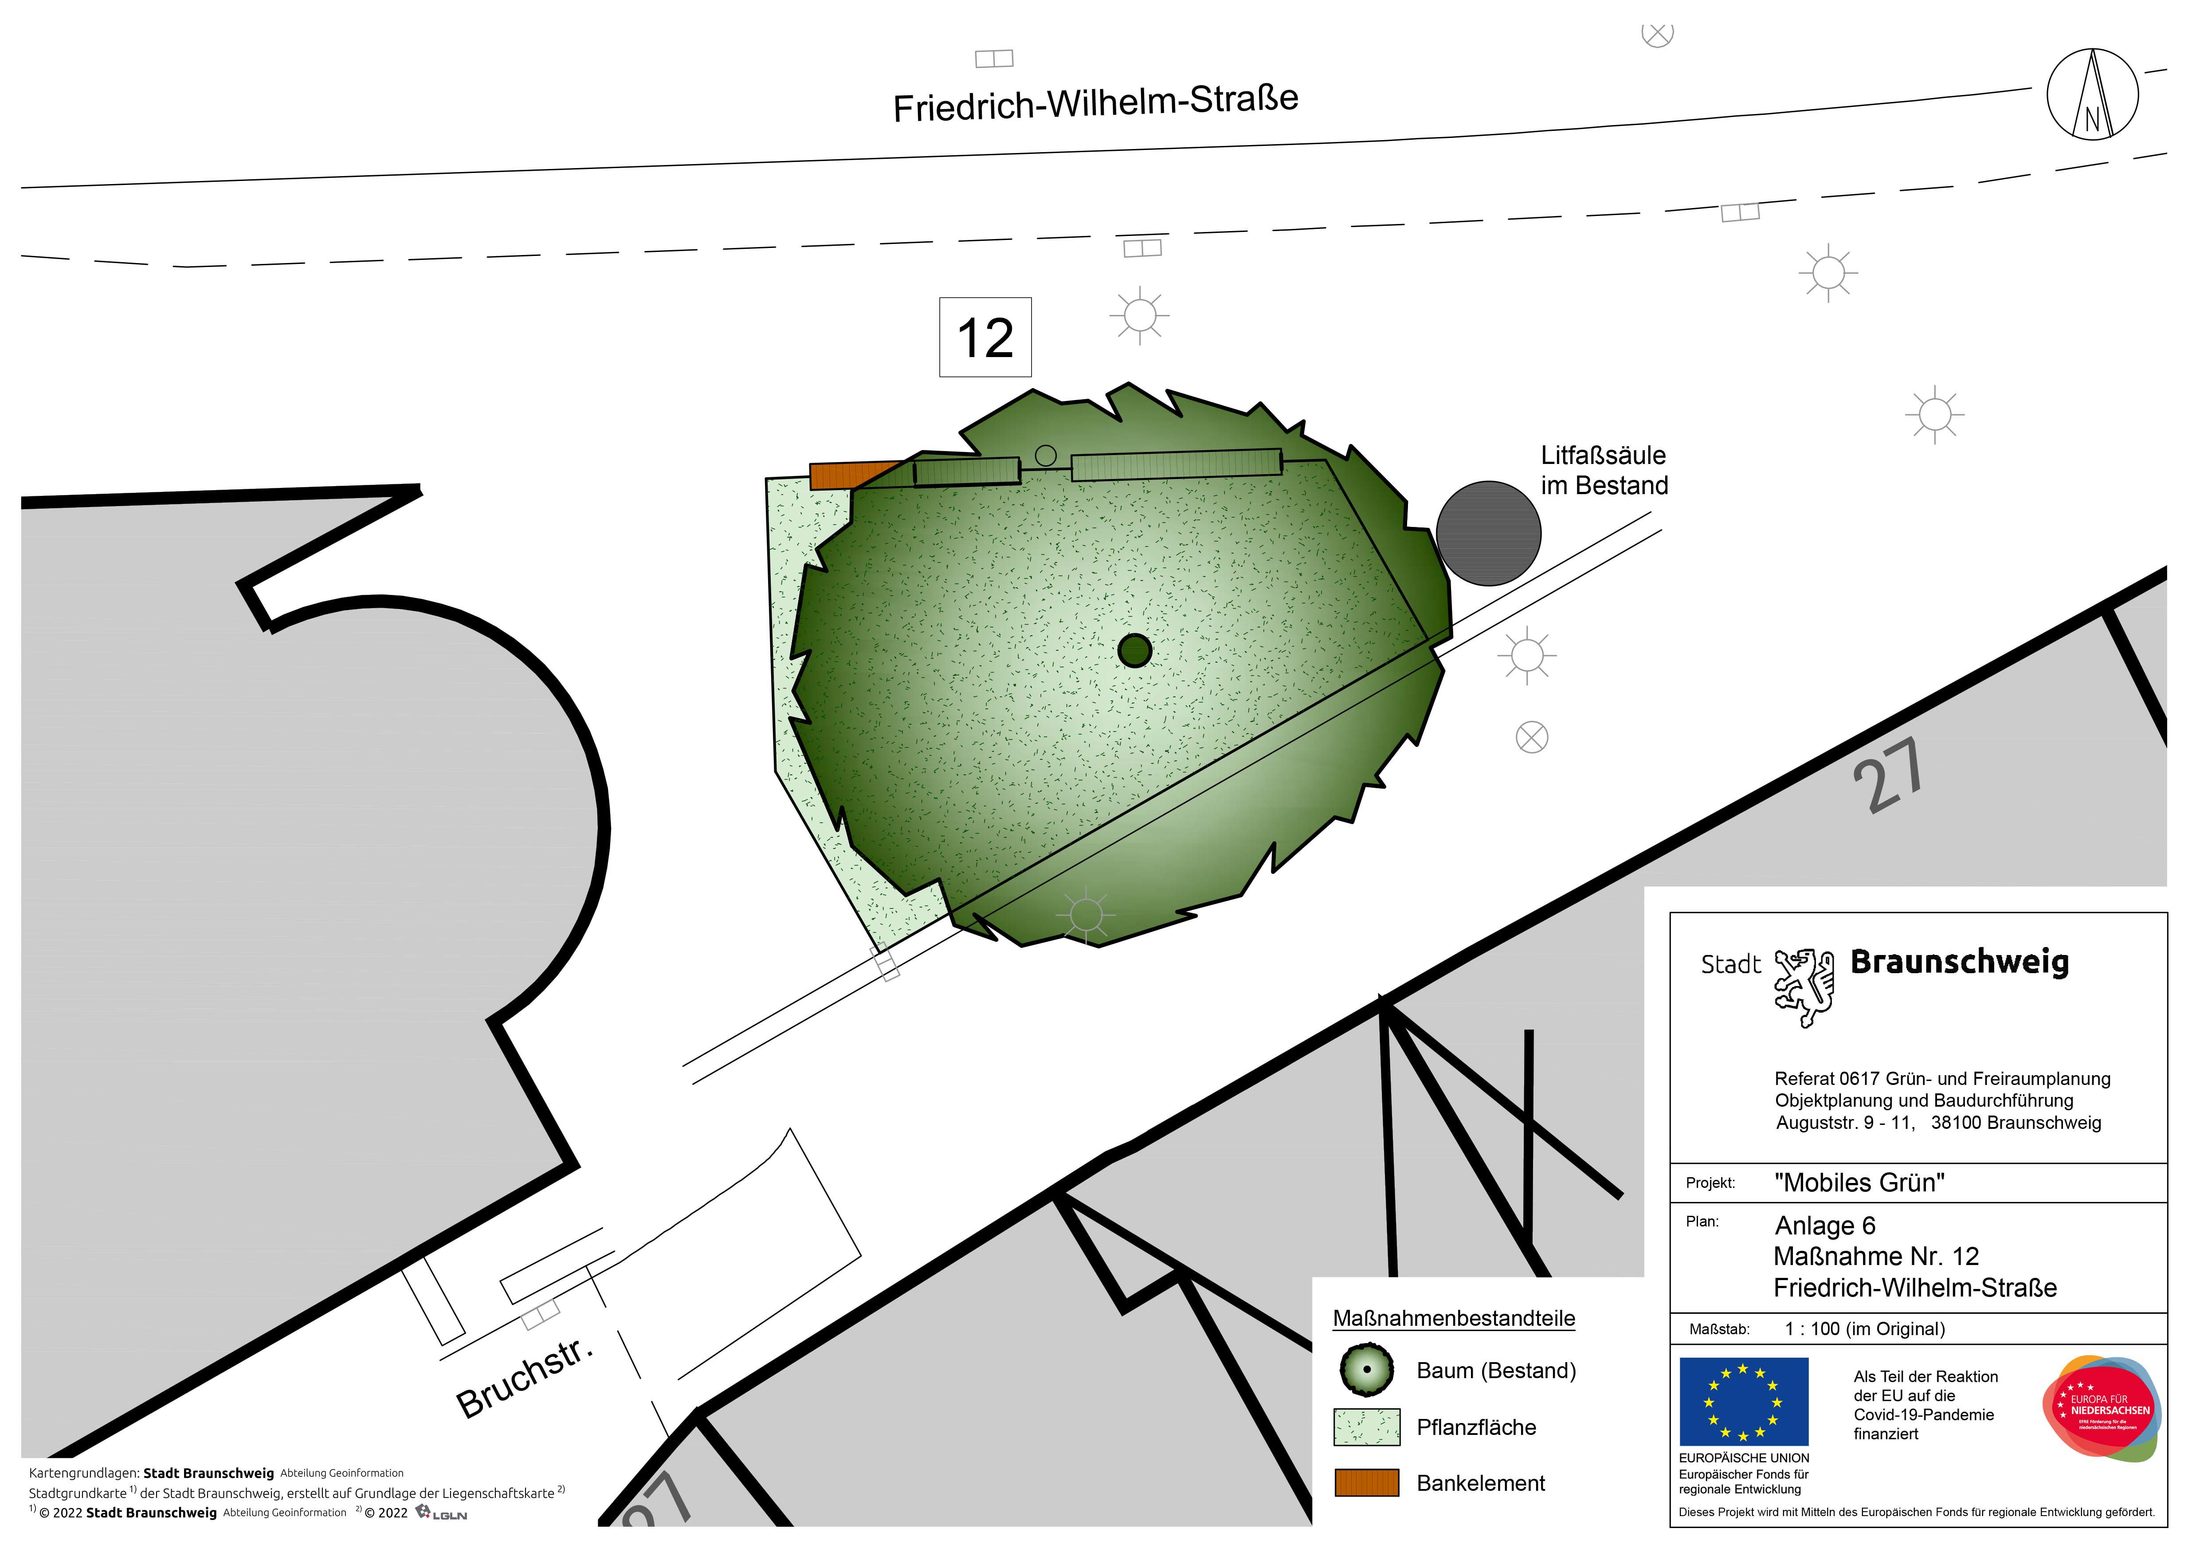 Stadtplanausschnitt "mobiles Grün" im Bereich Friedrich-Wilhelm-Strasse (Wird bei Klick vergrößert)